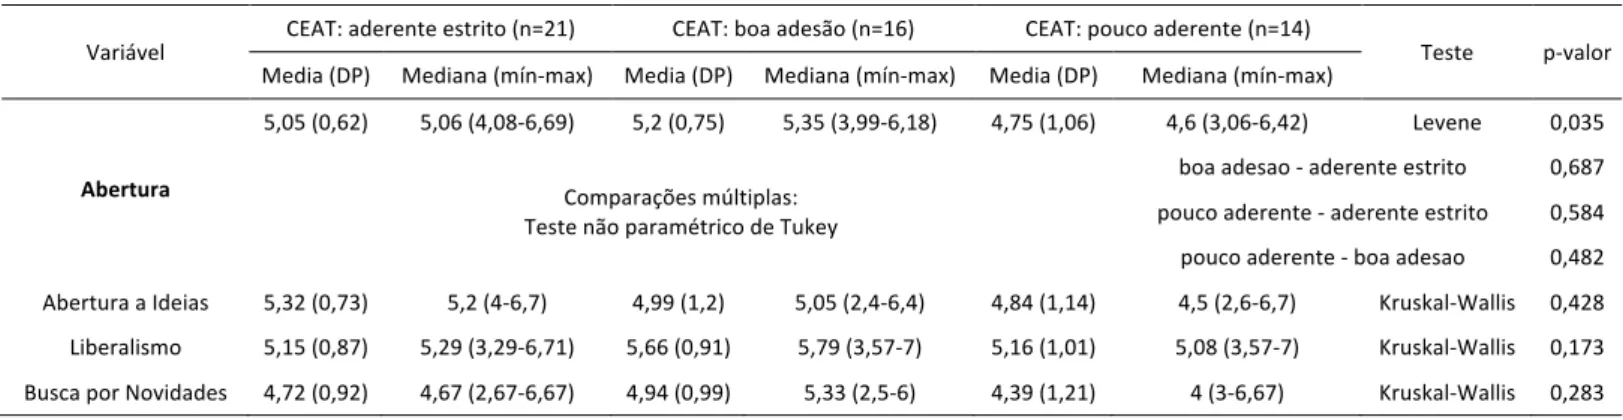 Tabela 18: Comparação da escala e subescalas de Abertura com a escala CEAT padrão. 